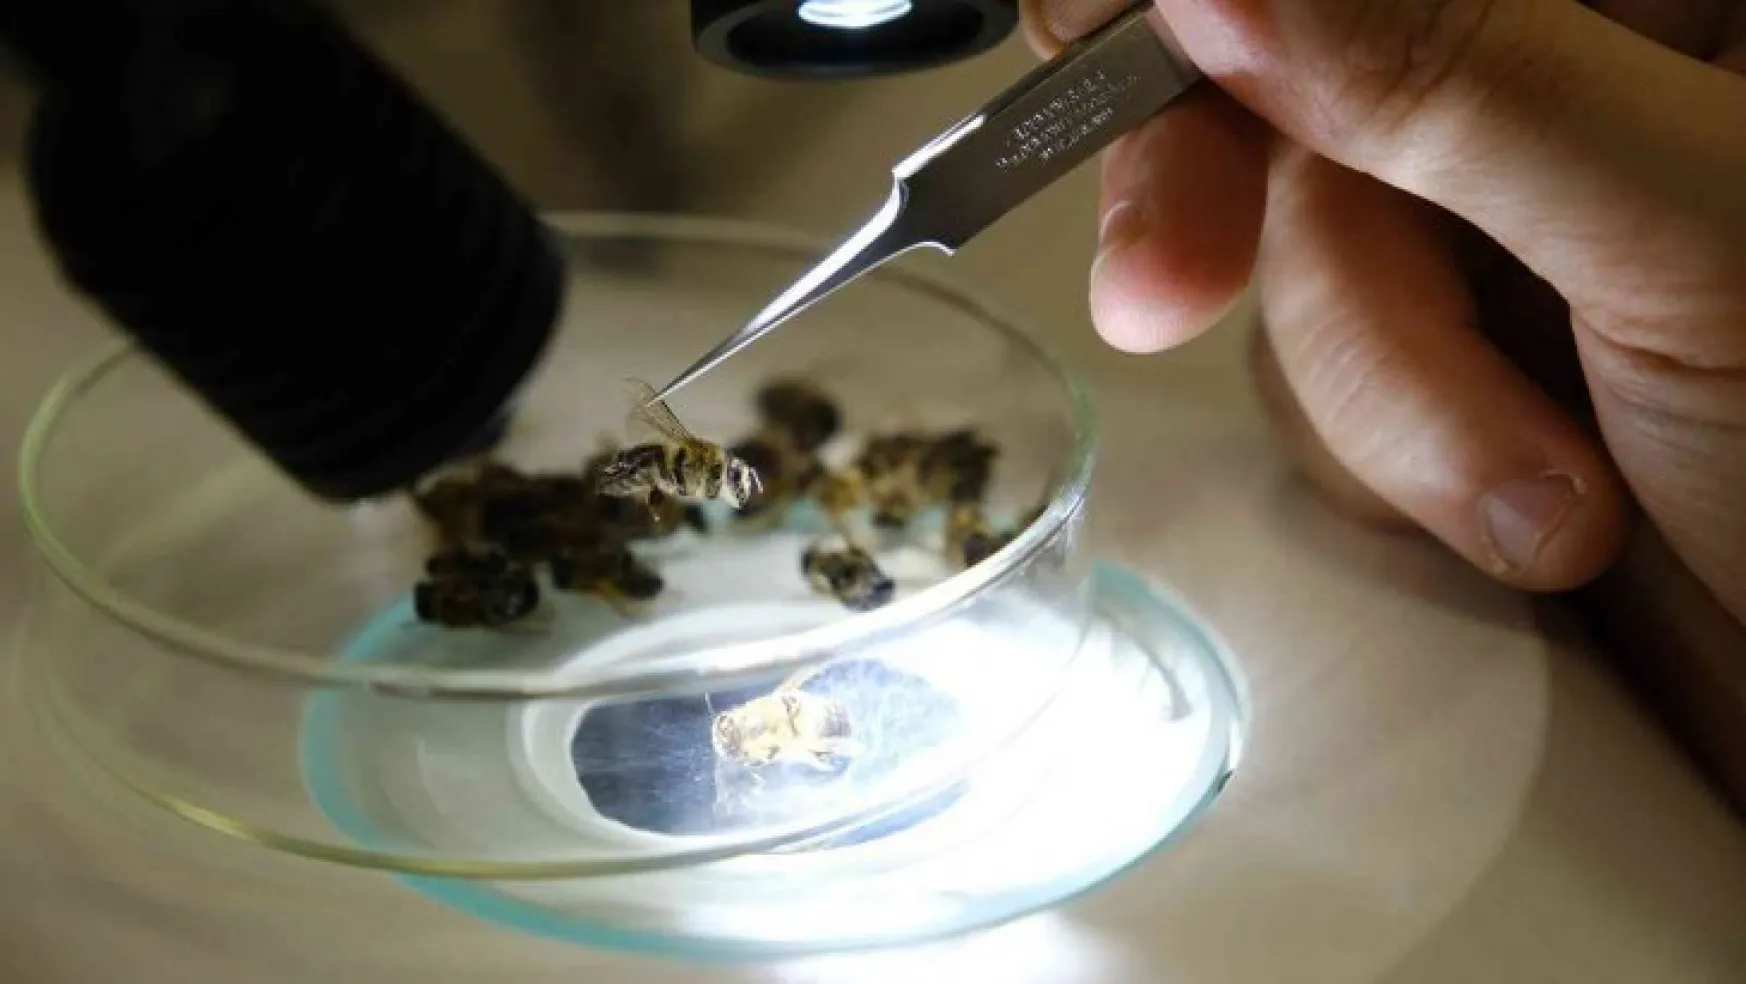 Sivas Cumhuriyet Üniversitesi arı hastalıkları teşhisine başladı